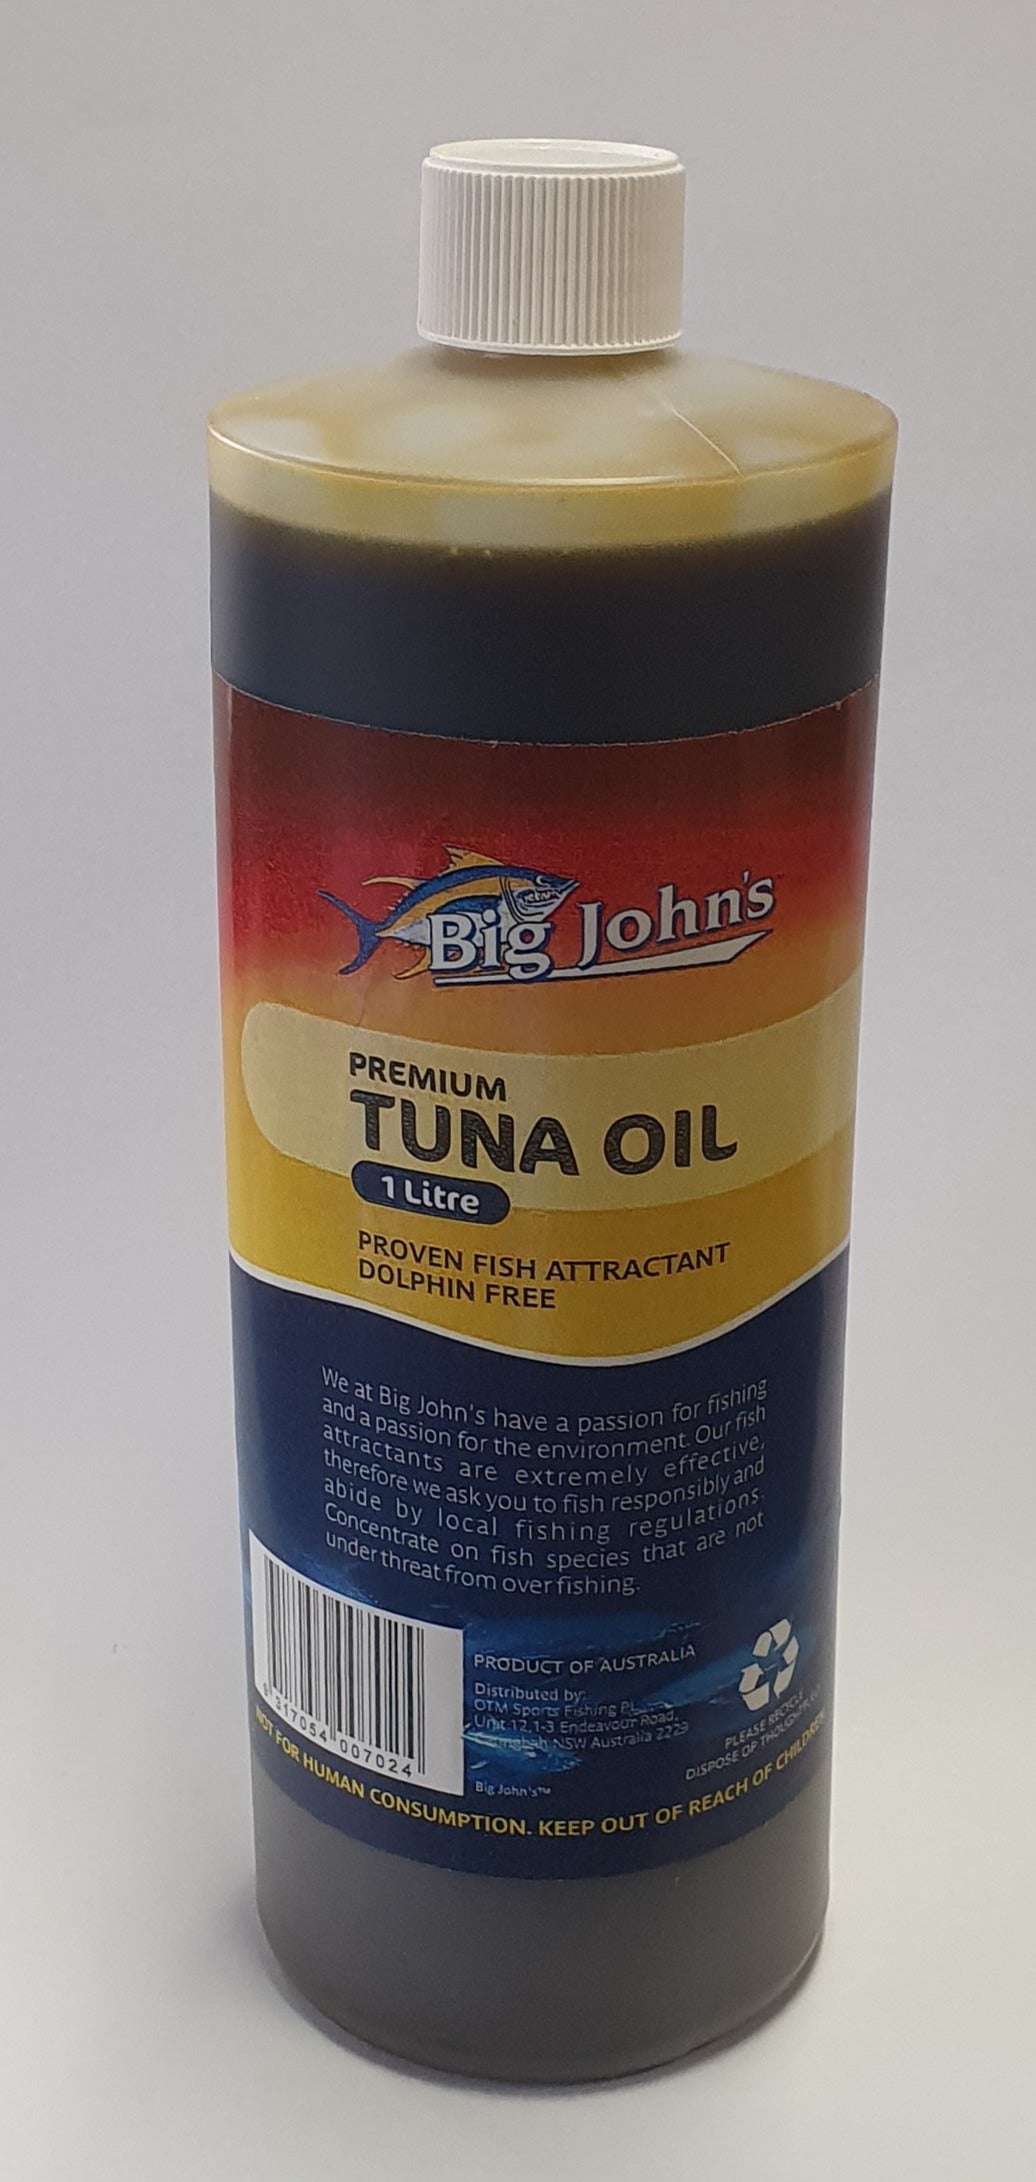 Big Johns Tuna Oil 1 litre